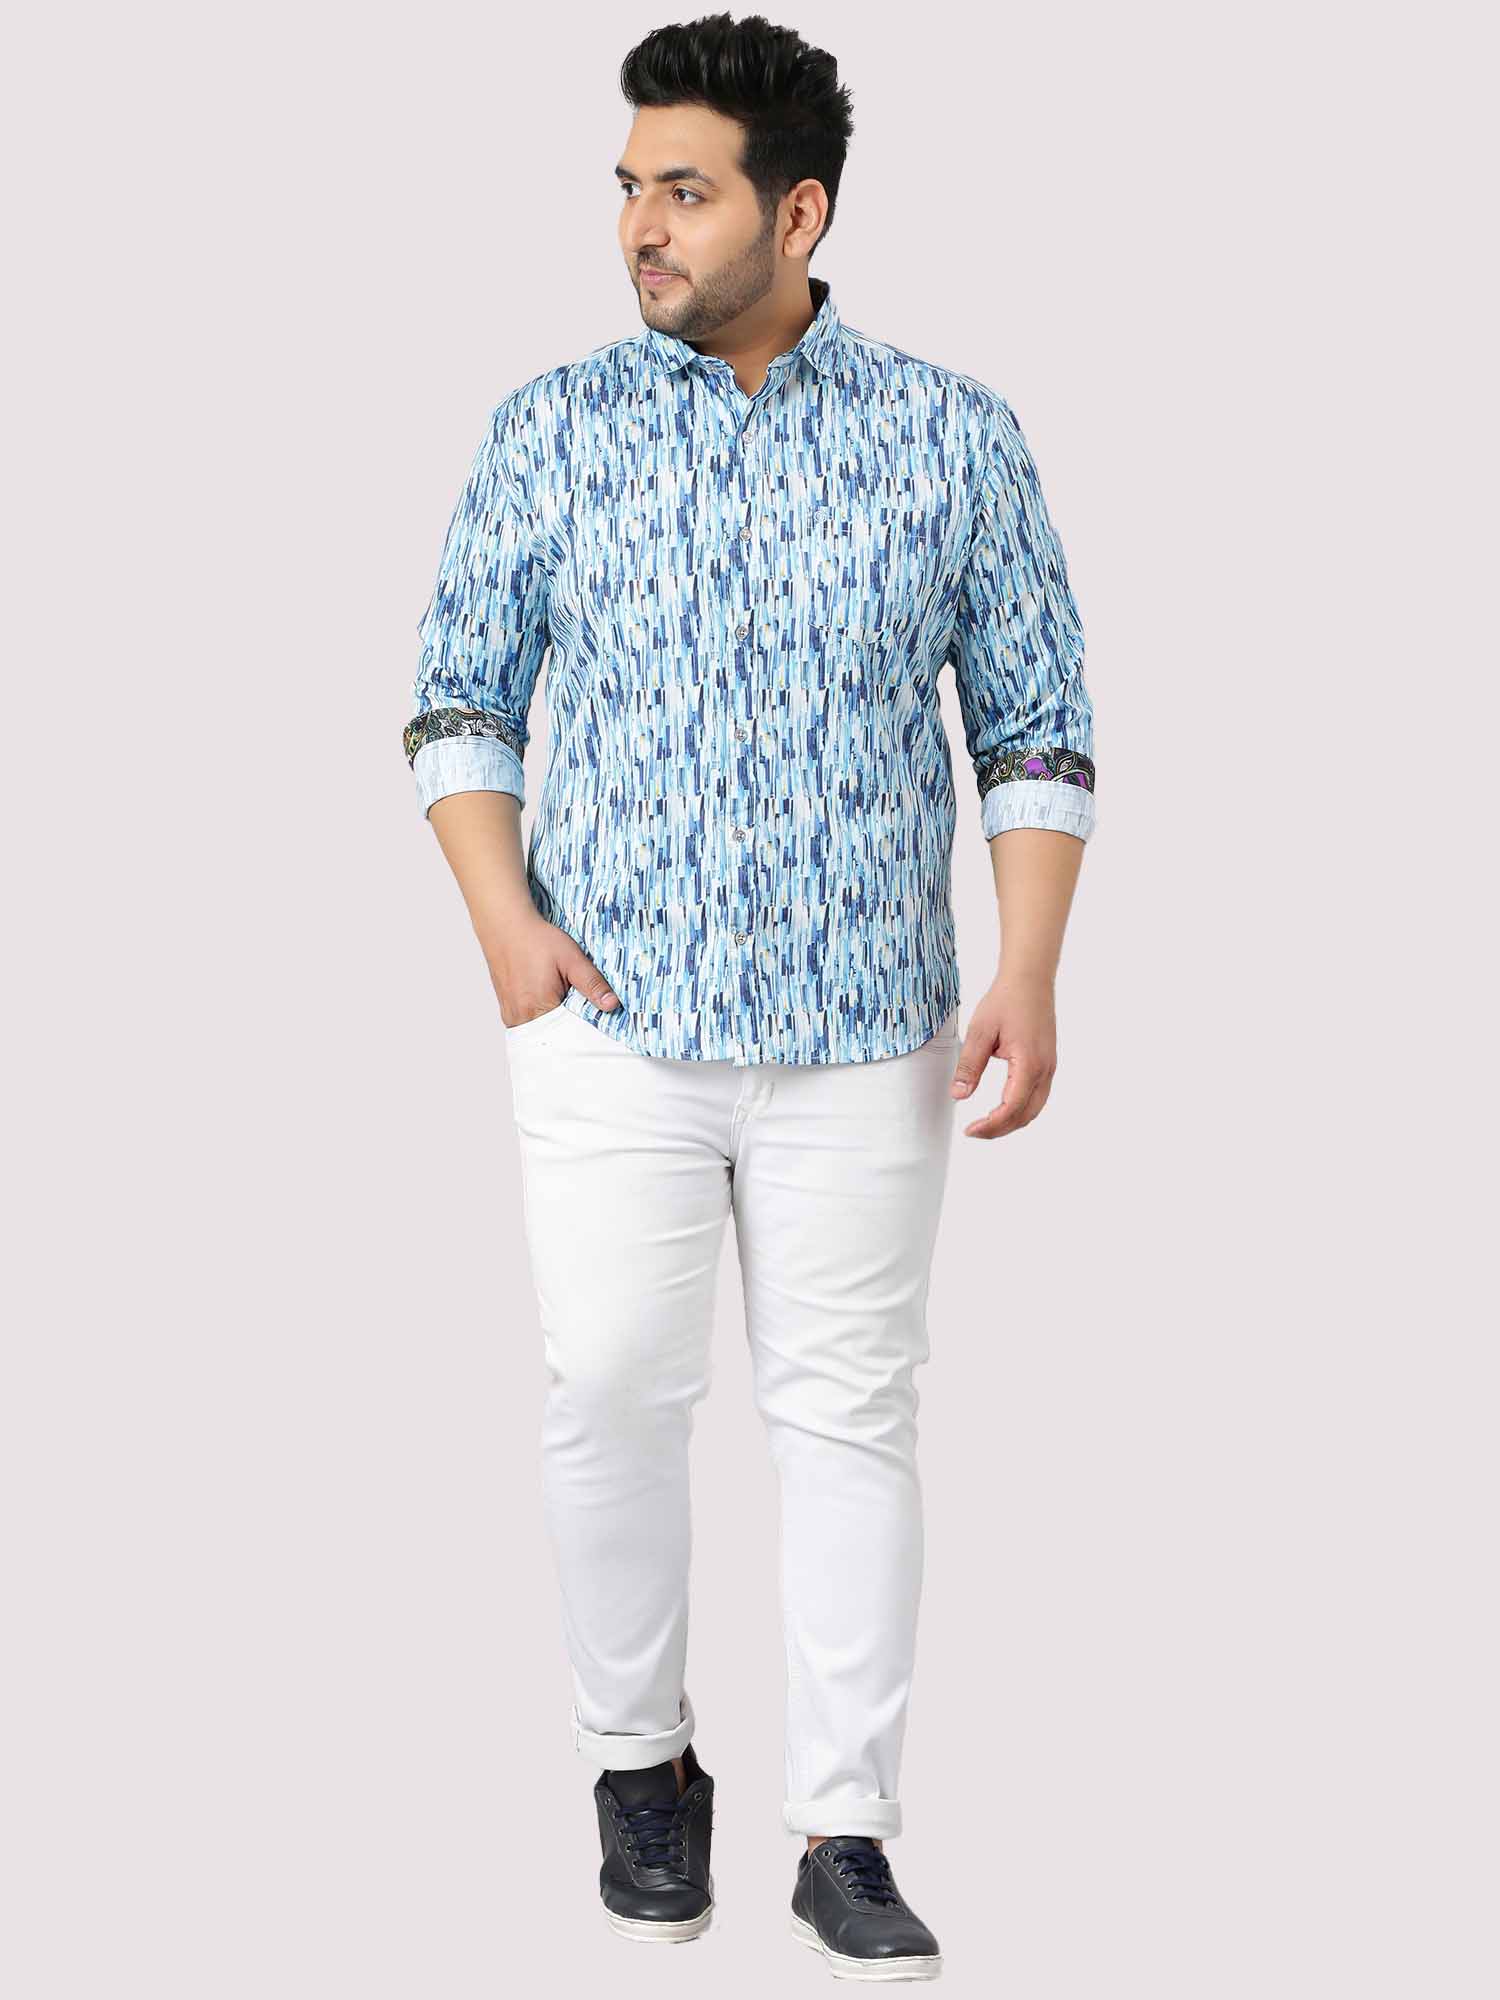 Blue Terrain Digital Printed Full Shirt Men's Plus Size